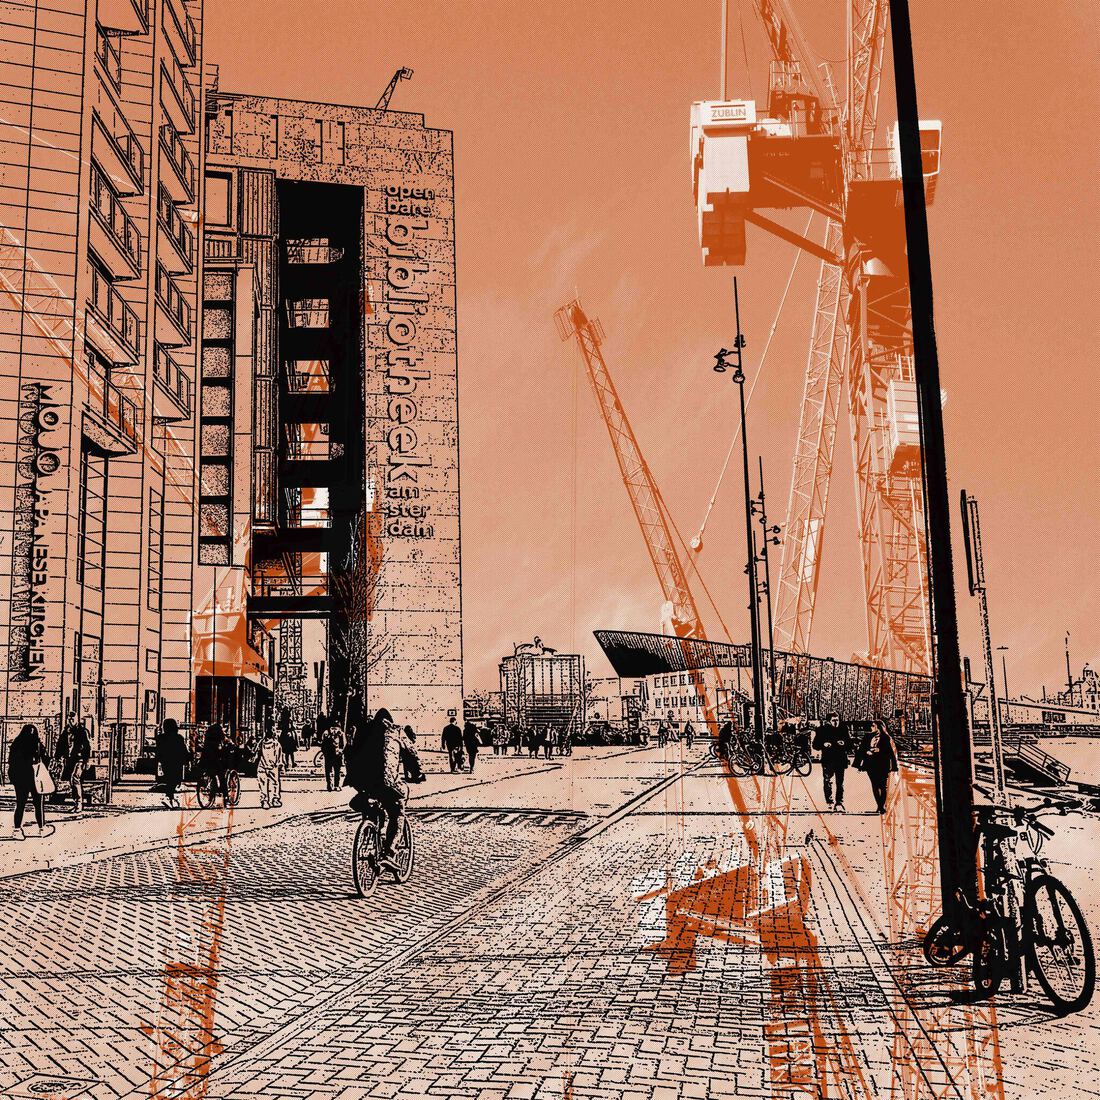  Aan de  Oosterdokskade, Amsterdam - digitale art-print